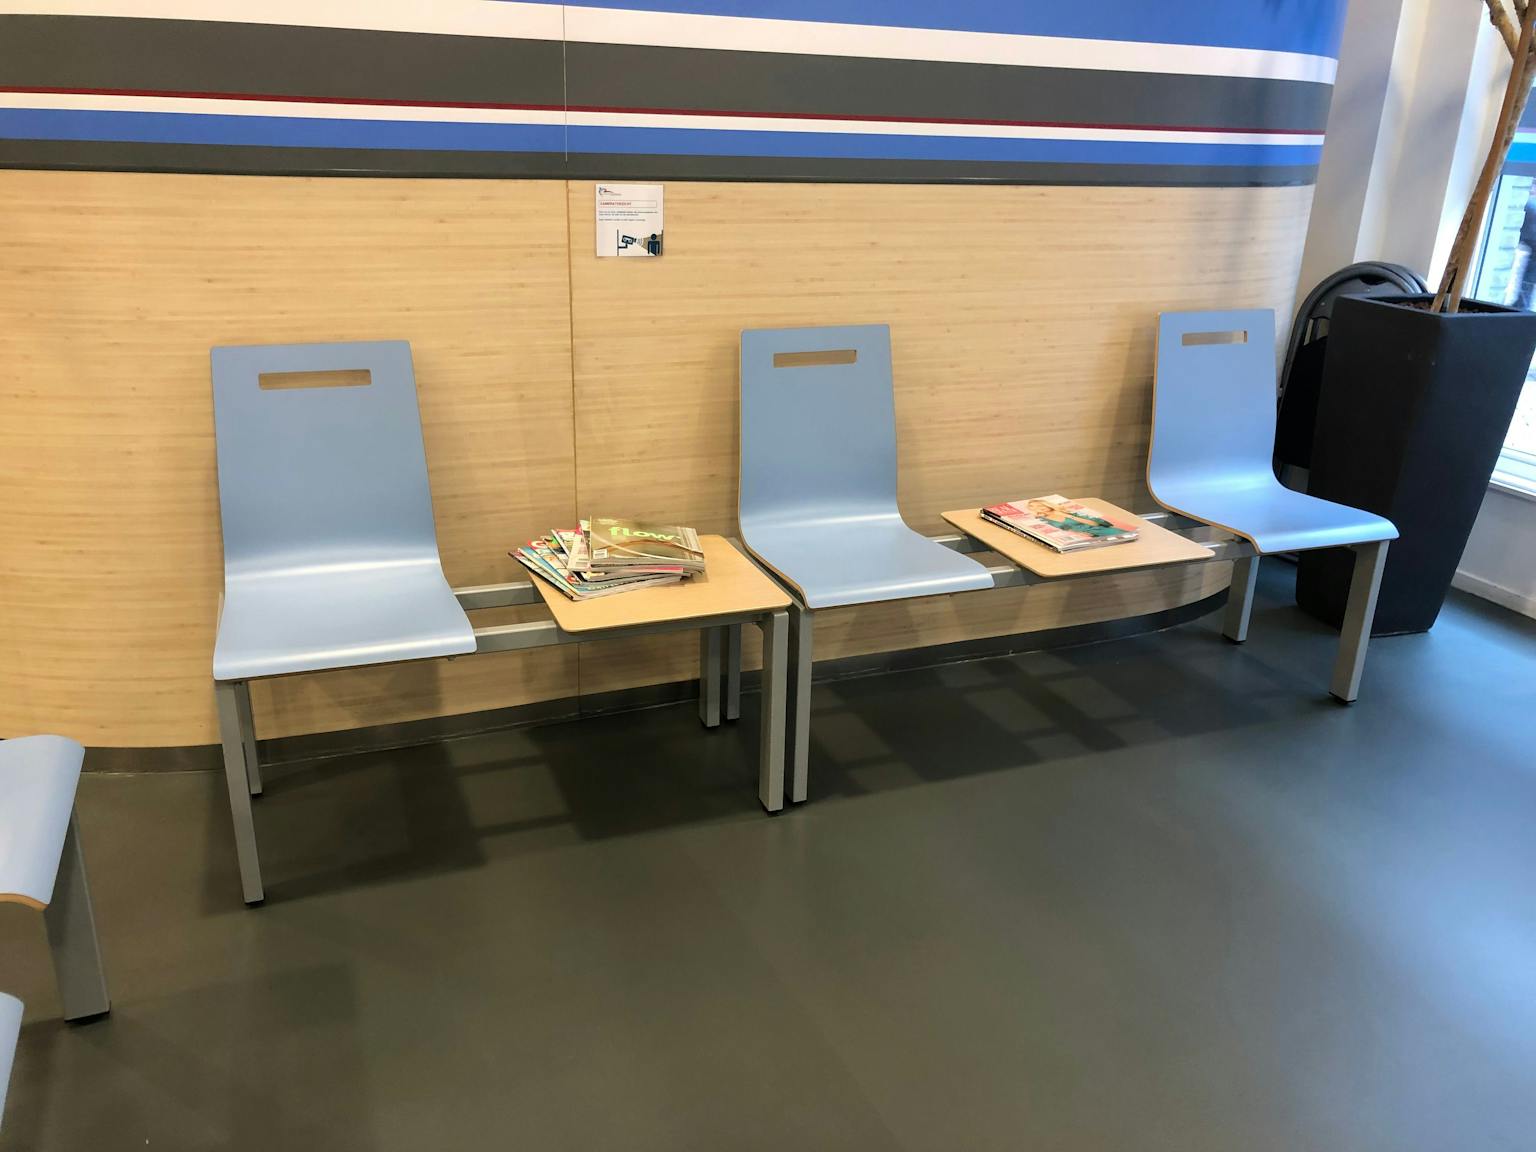 Wachtkamer met daarin blauwe stoelen en tussen de stoelen in een tafel met daarop tijdschriften.